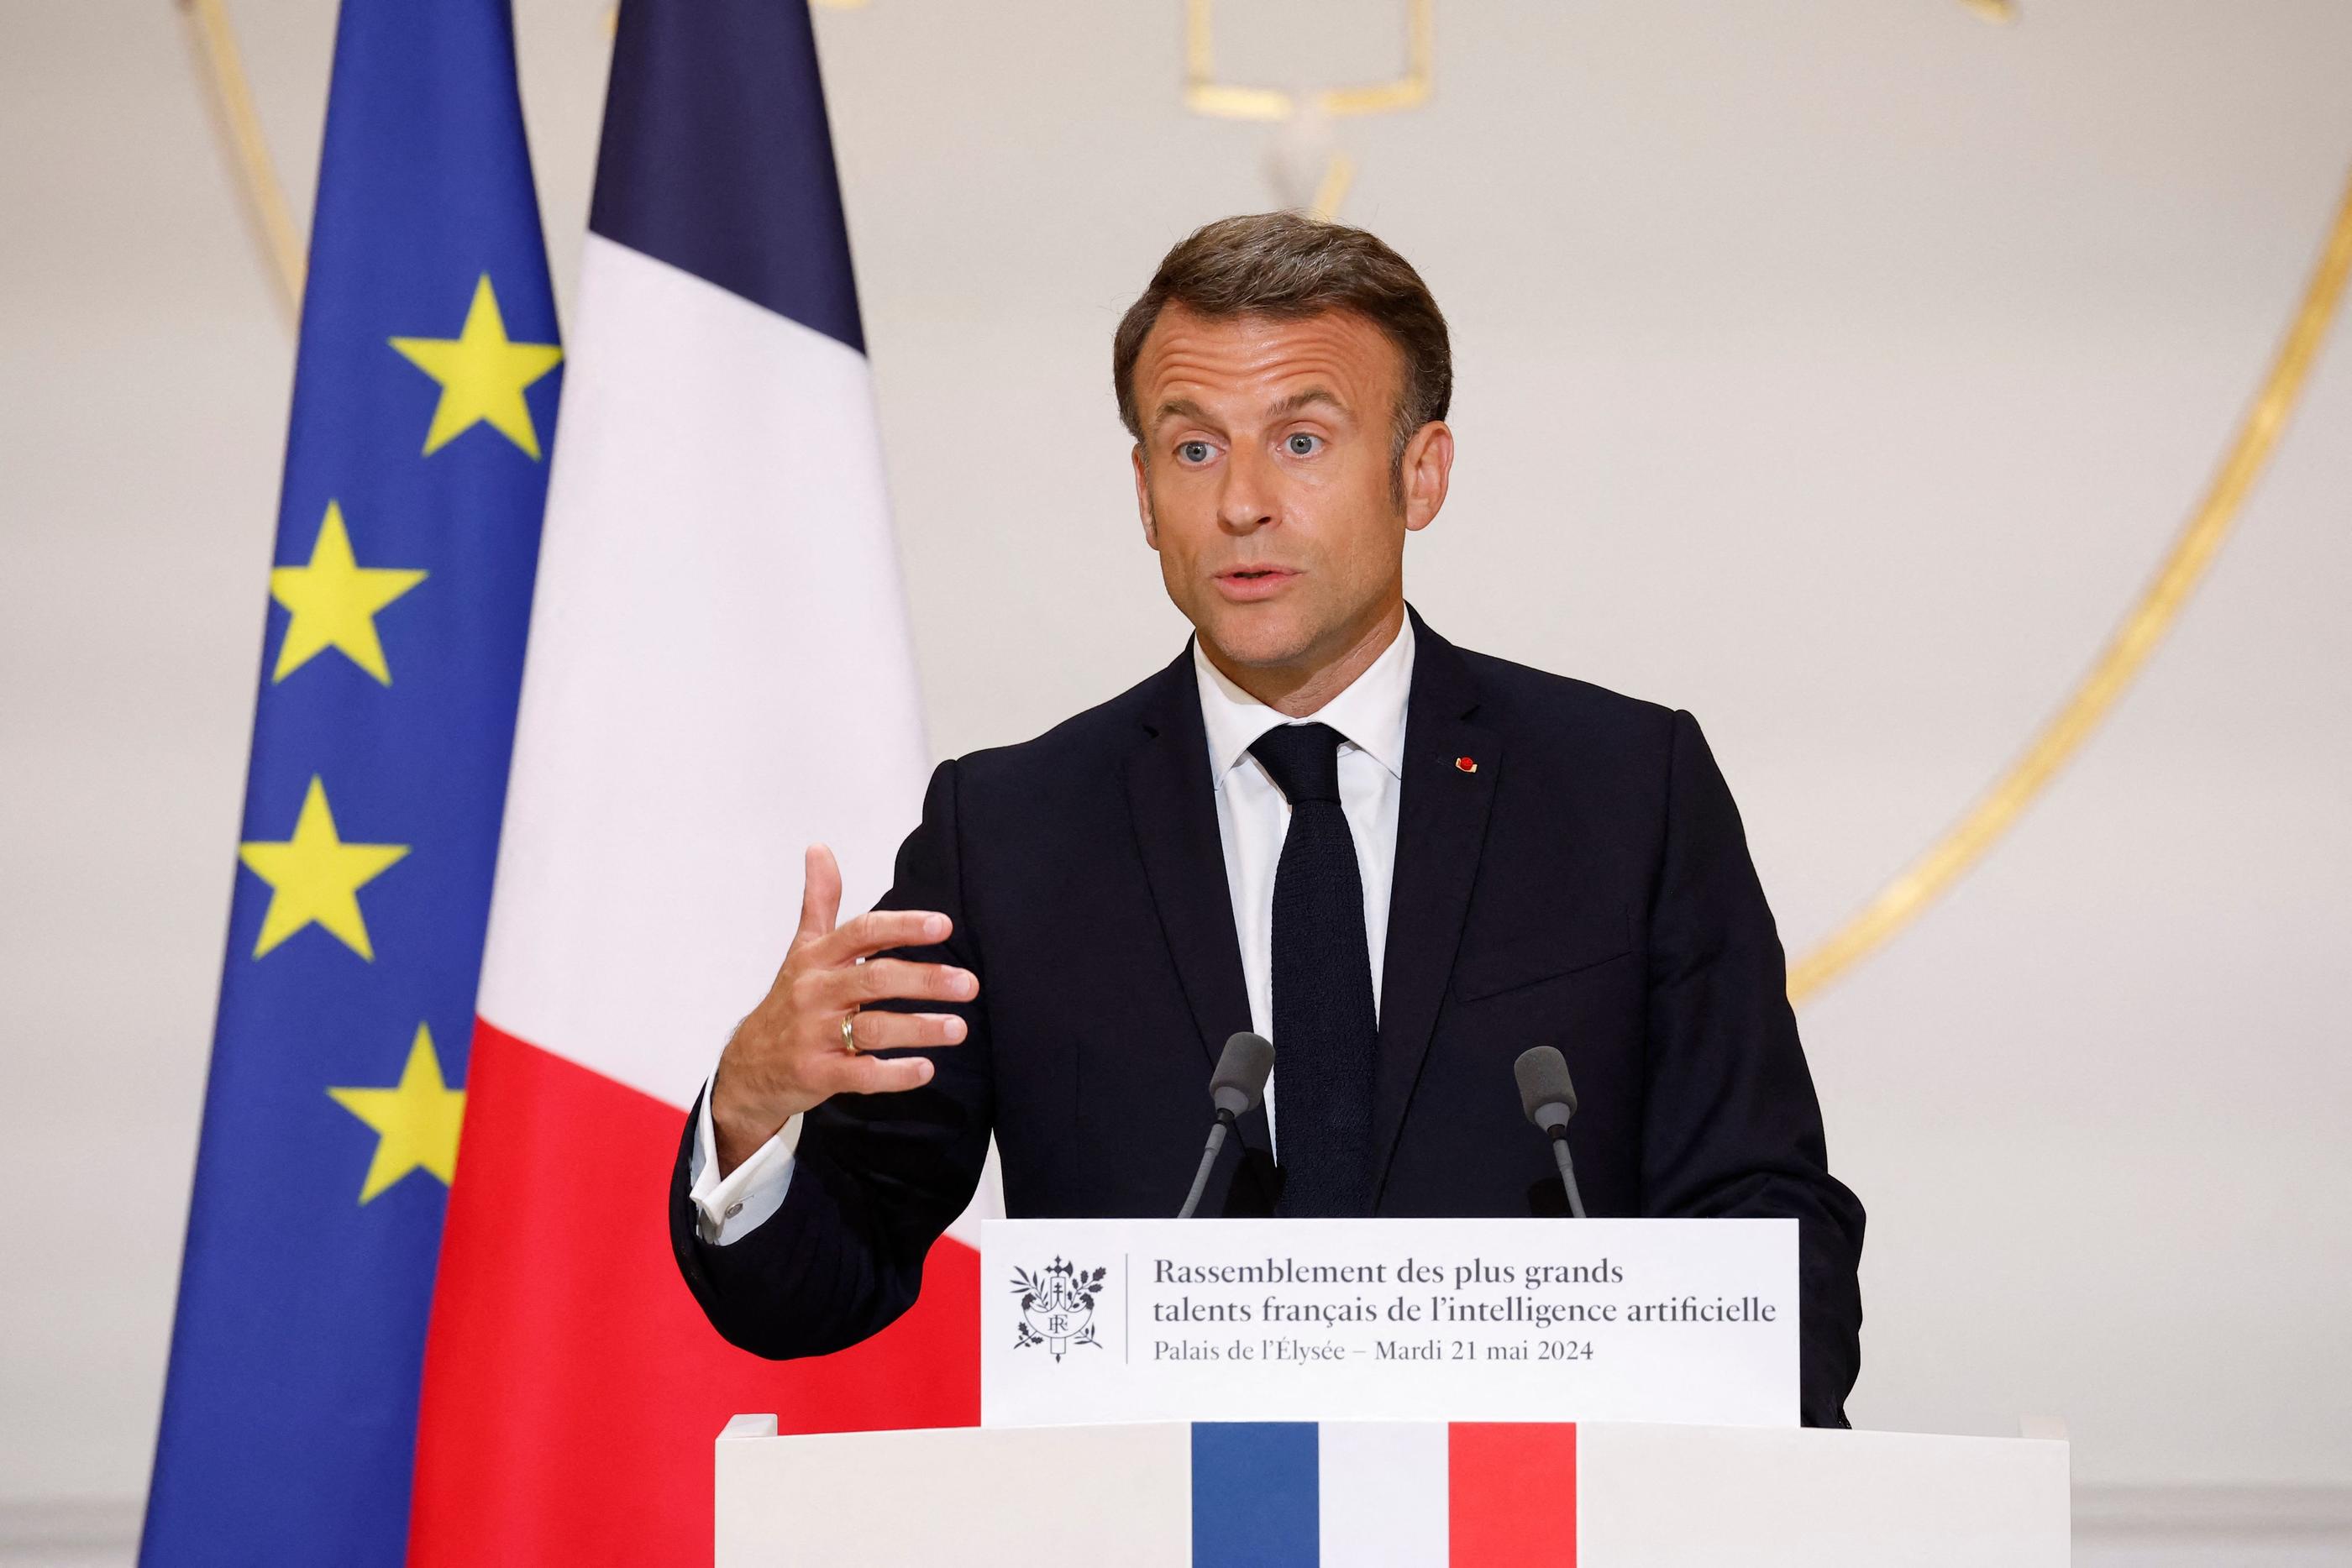 Le président français s'est exprimé lors d'un sommet sur l'intelligence artificielle. AFP/Yoan Valat